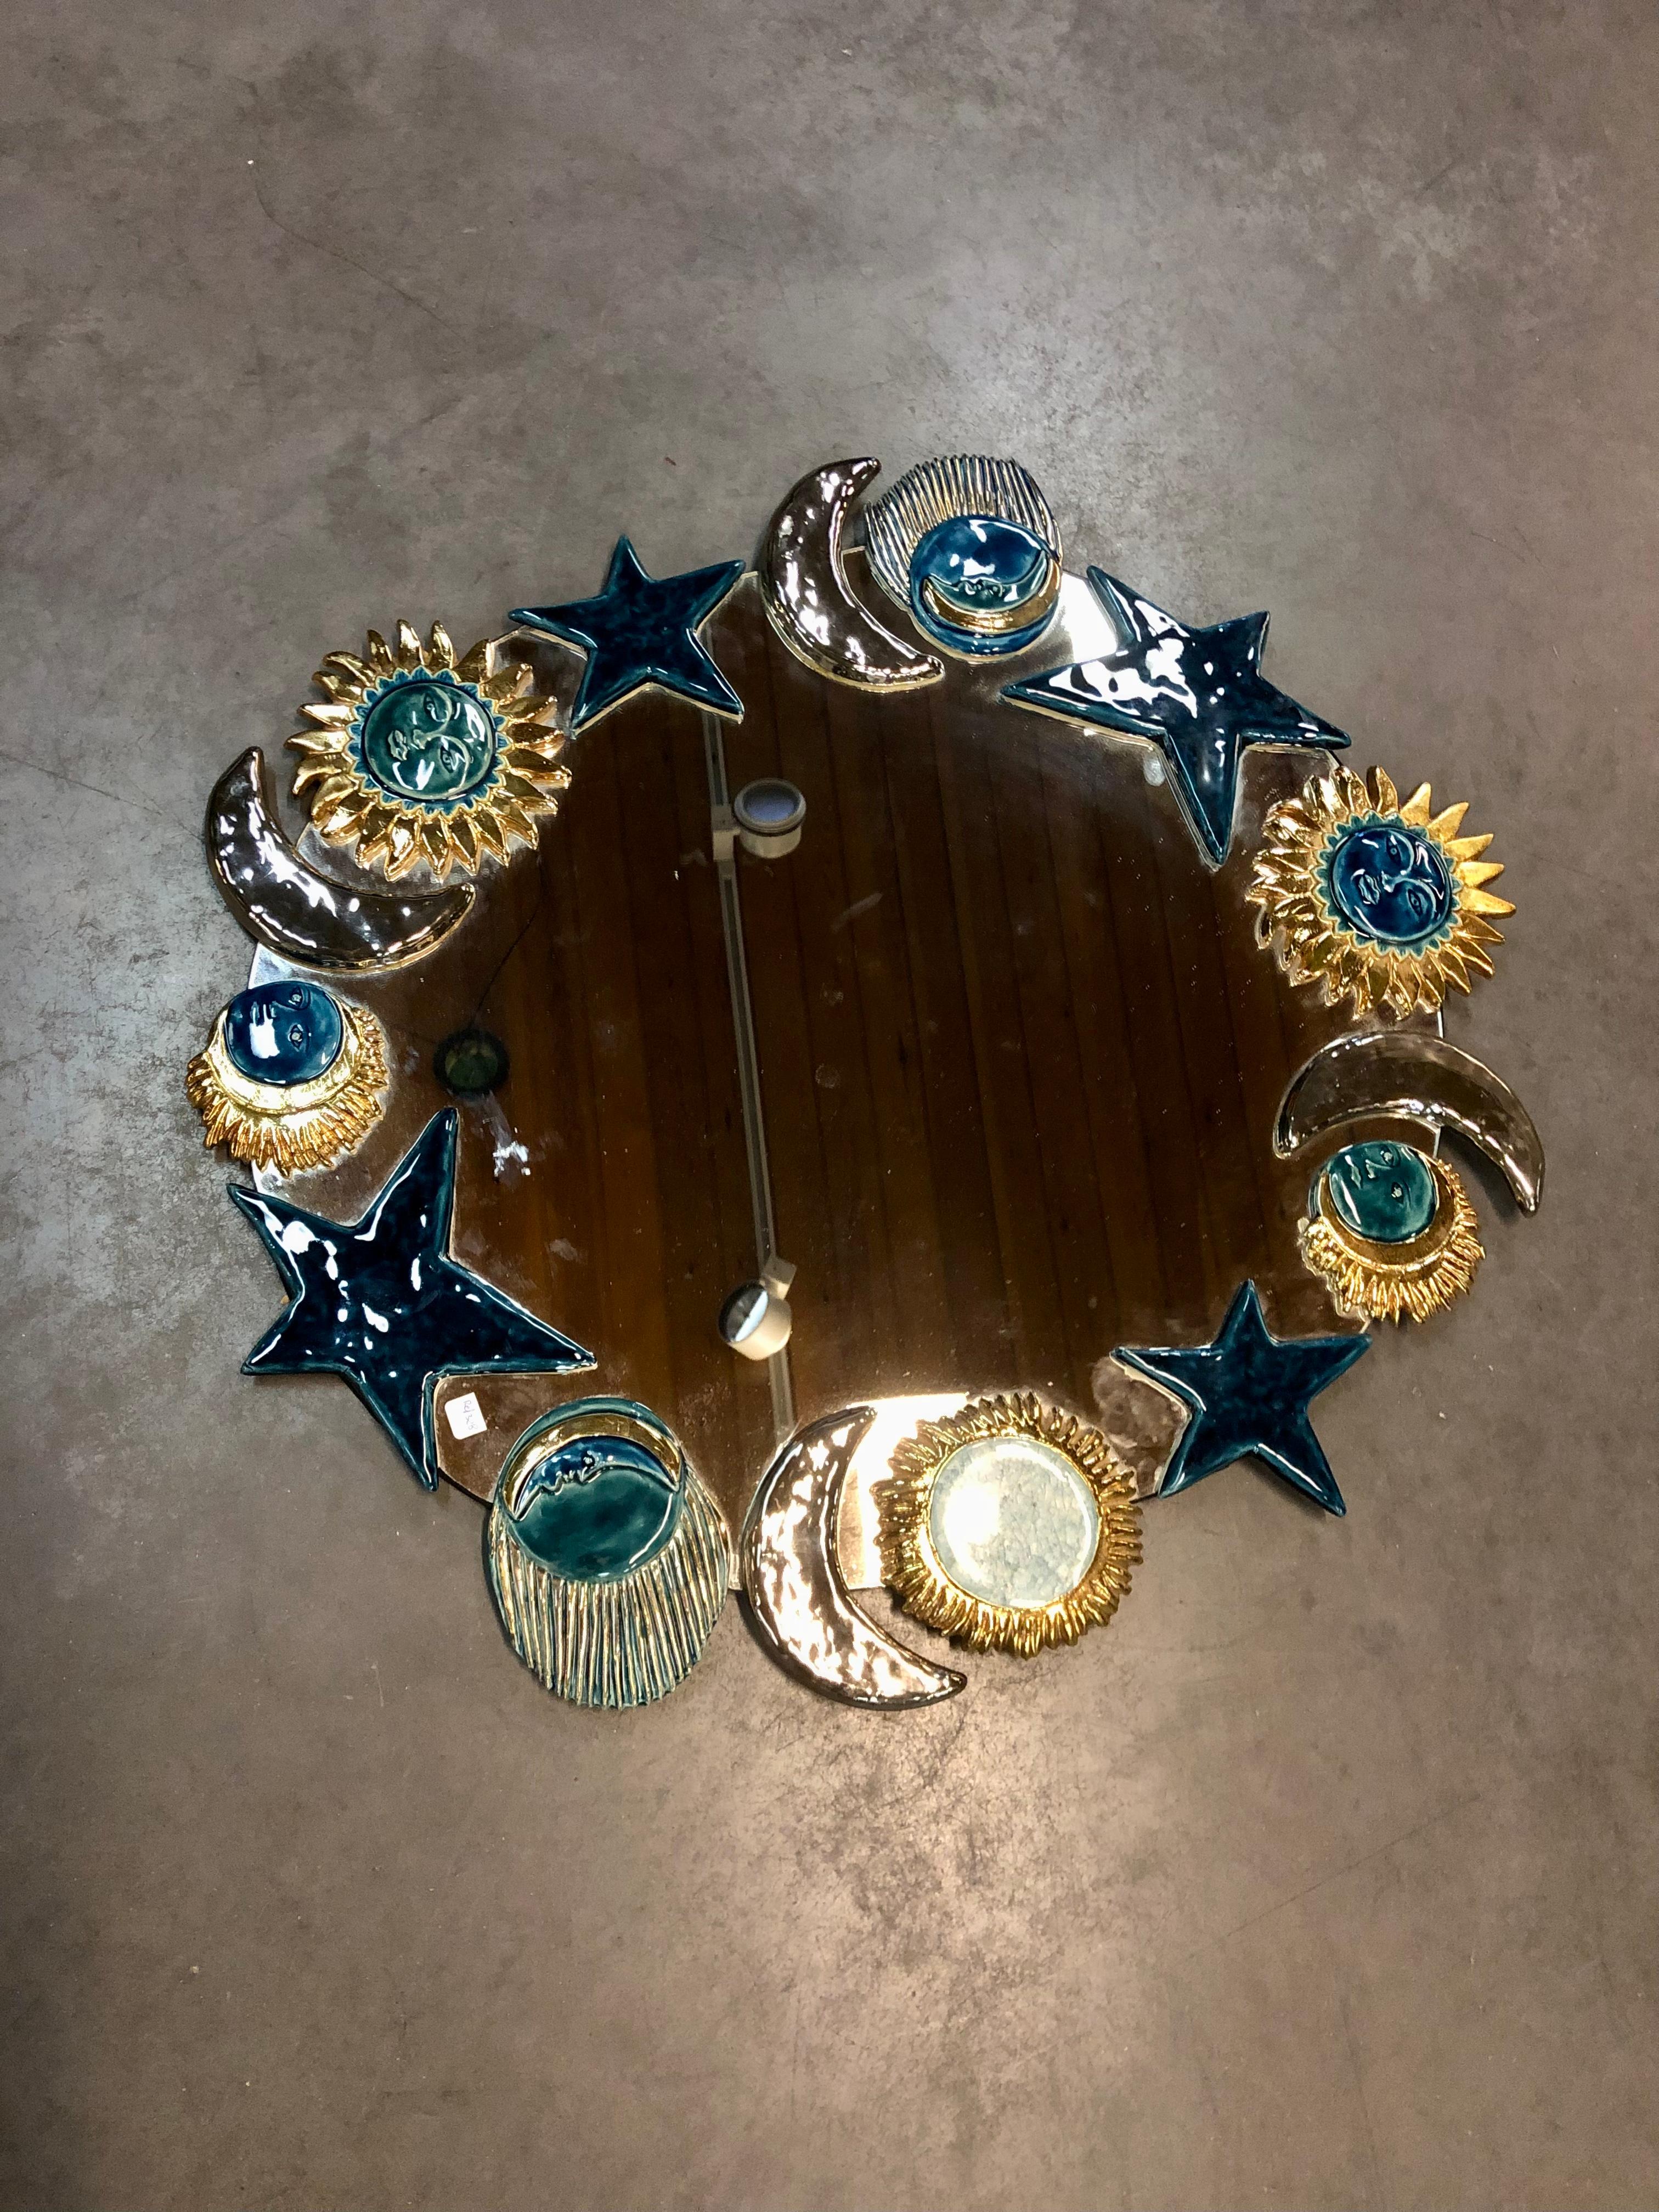 Important miroir à bronzage de l'atelier français de  Mithe Espelt.
Il est réalisé en céramique émaillée représentant la lune, le soleil et l'étoile stylisés.
Design/One  par Marion de Crecy, fille de Mithe Espelt .